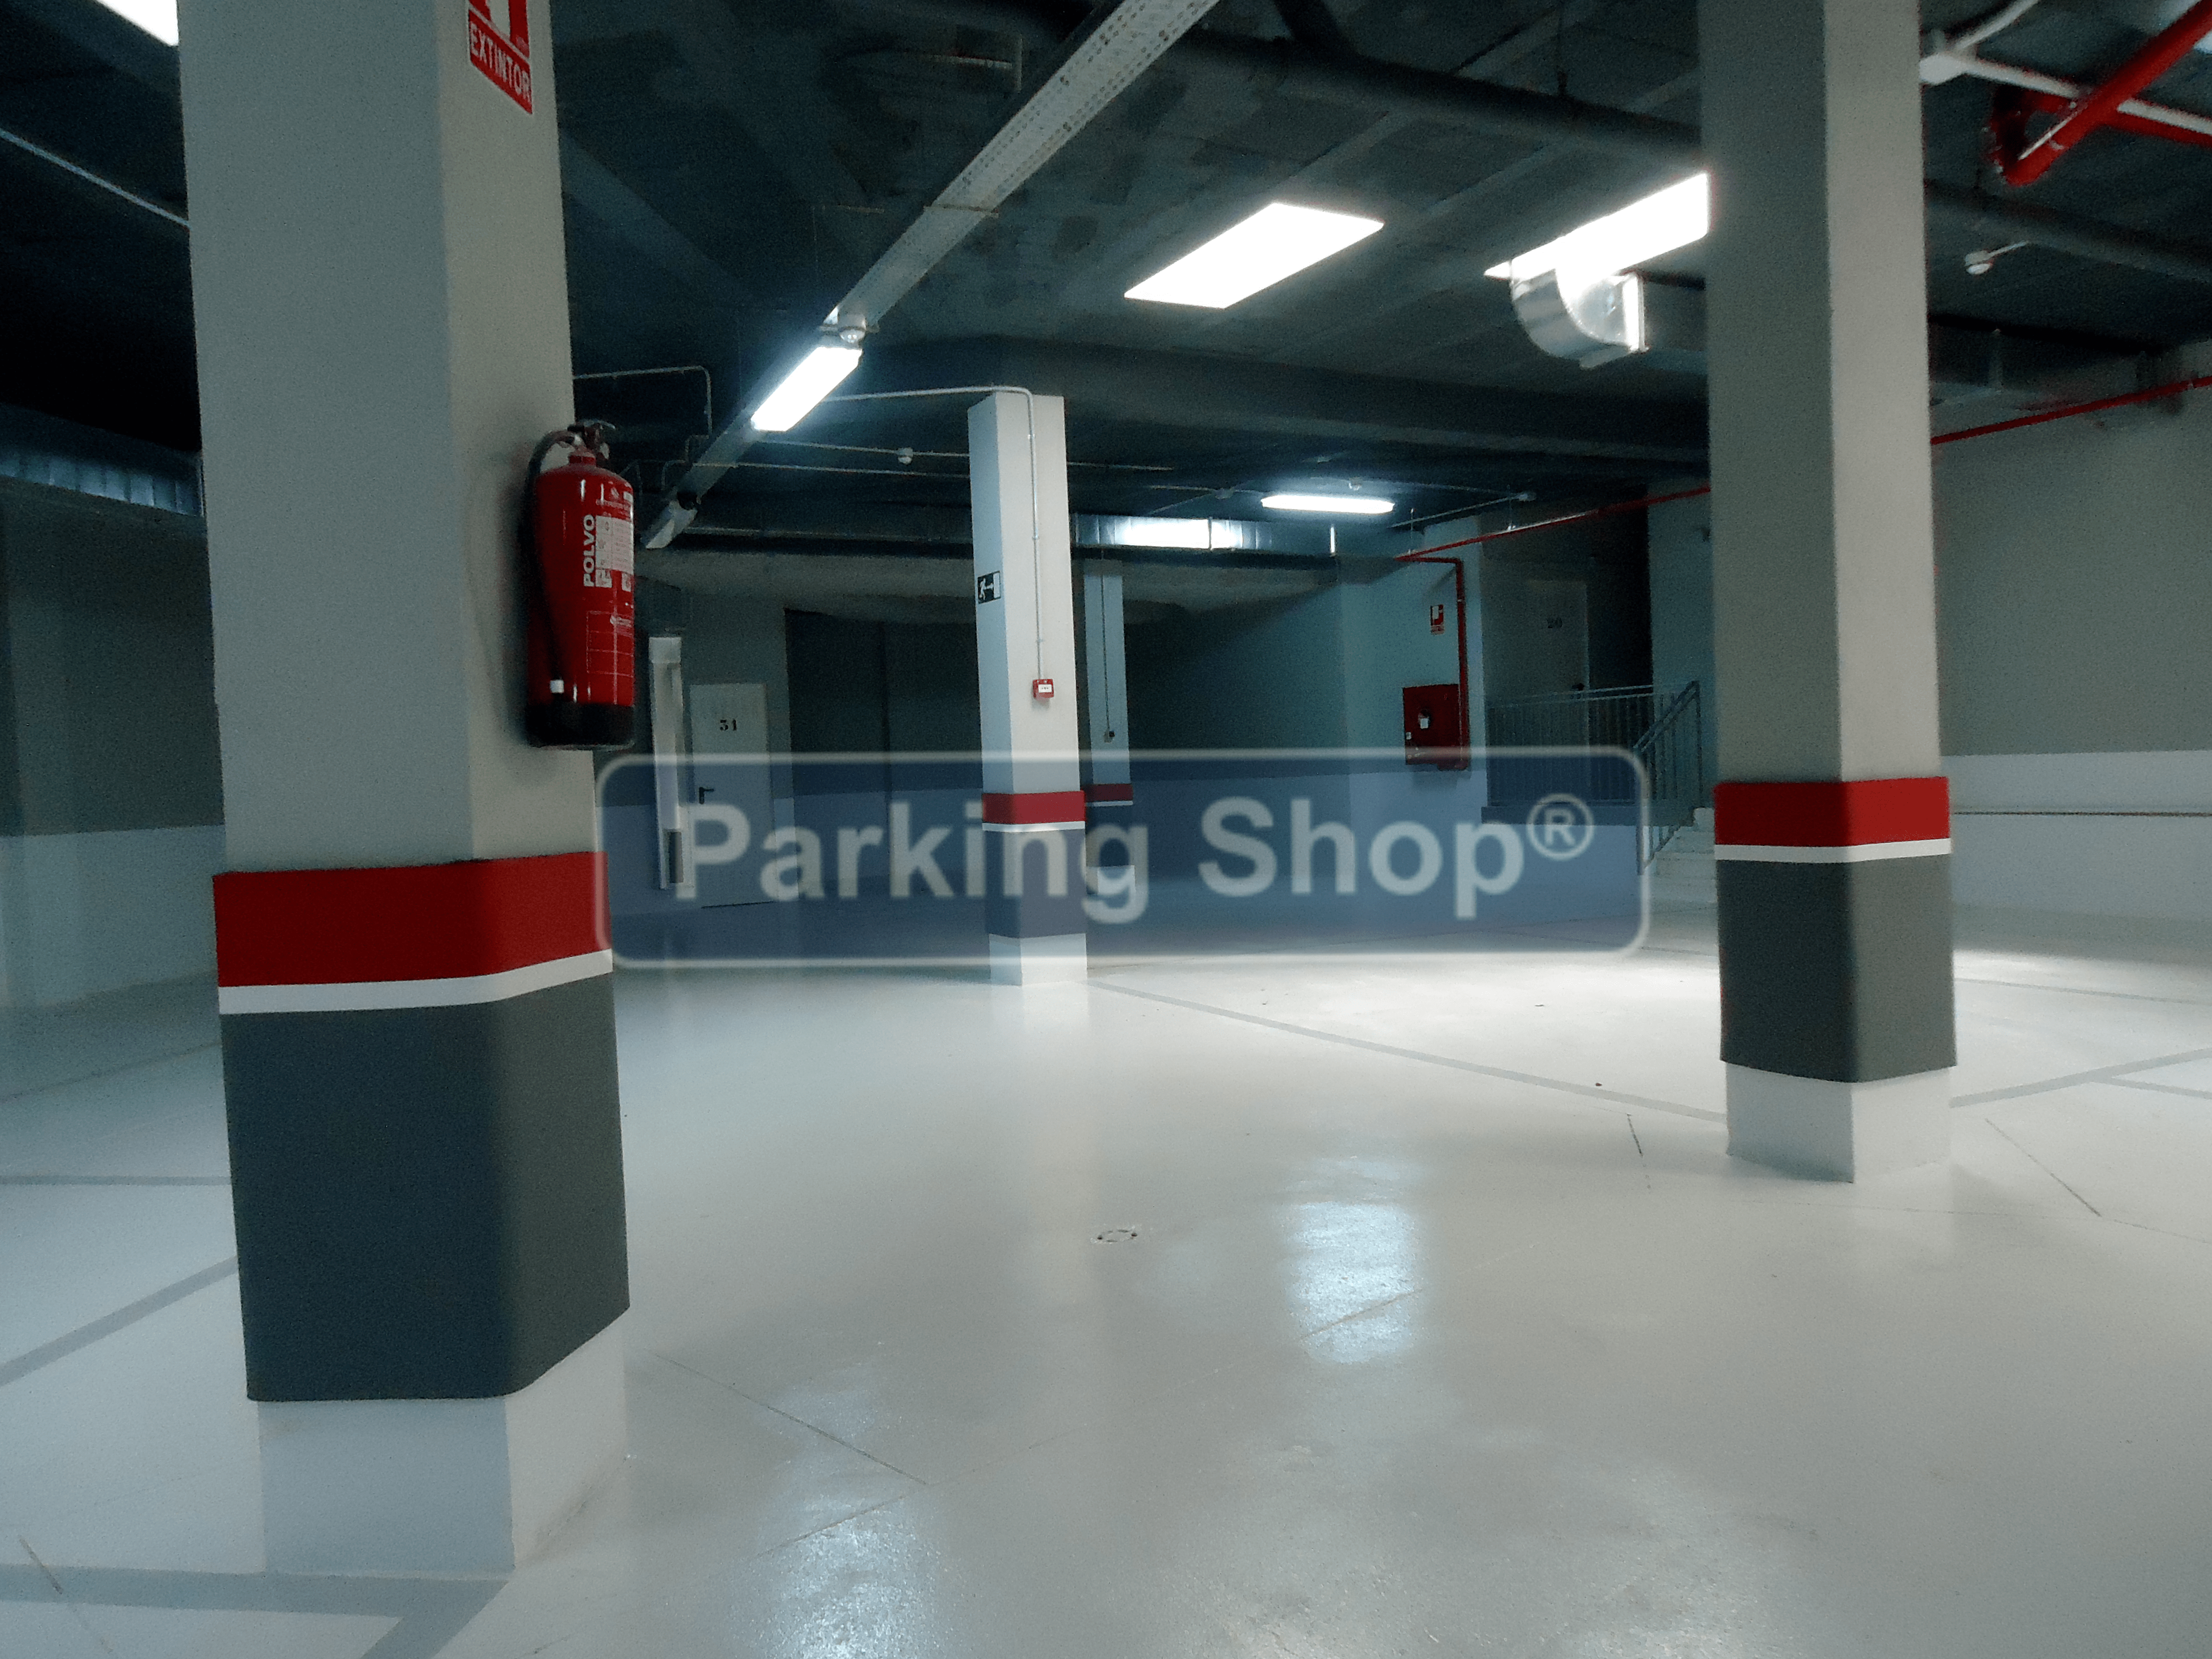 Parking FácilProtector de columnas para garaje tricolor